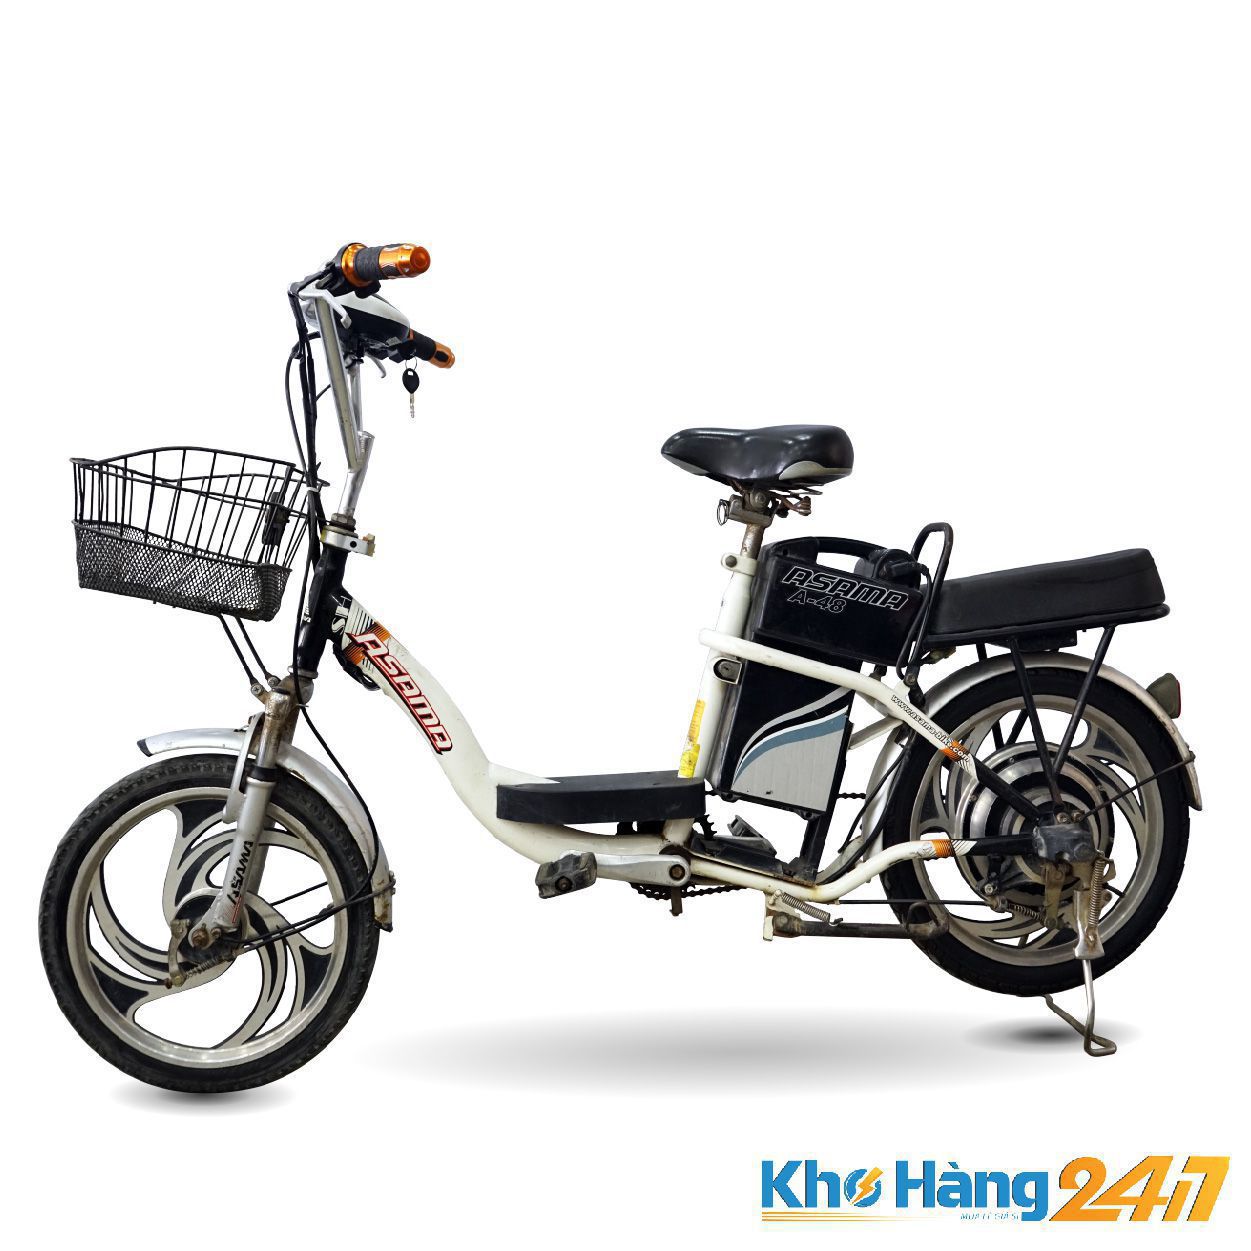 XE DAP DIEN ASAMA A 48 Trang 01 - Khohàng247 bán xe đạp điện nhật cũ TP.HCM